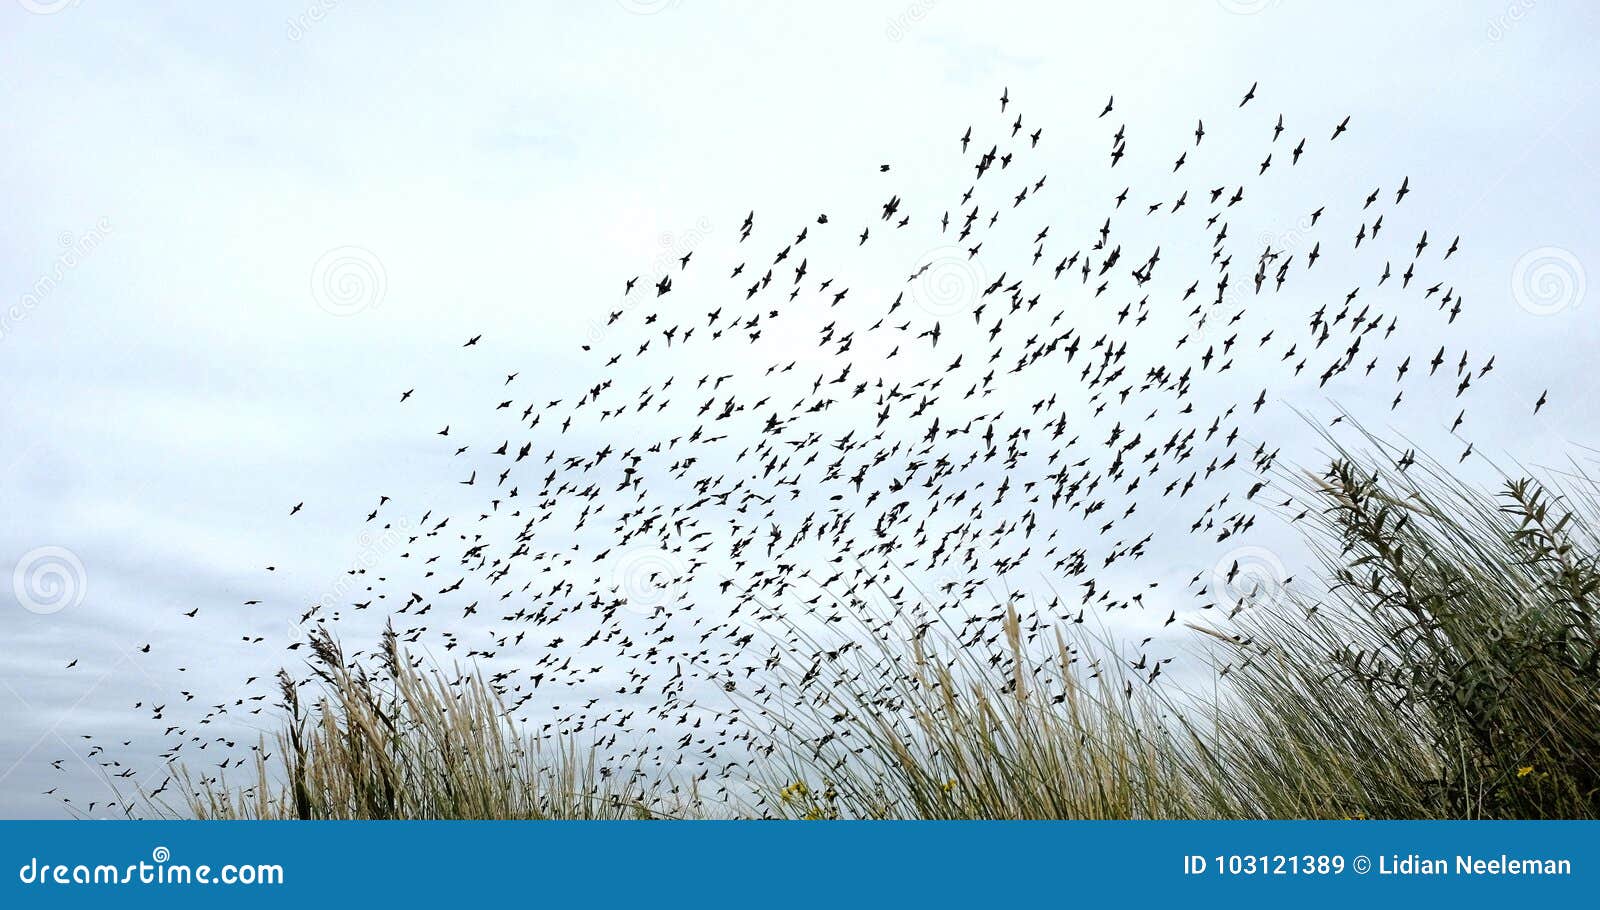 bird migration in dunes - netherlands